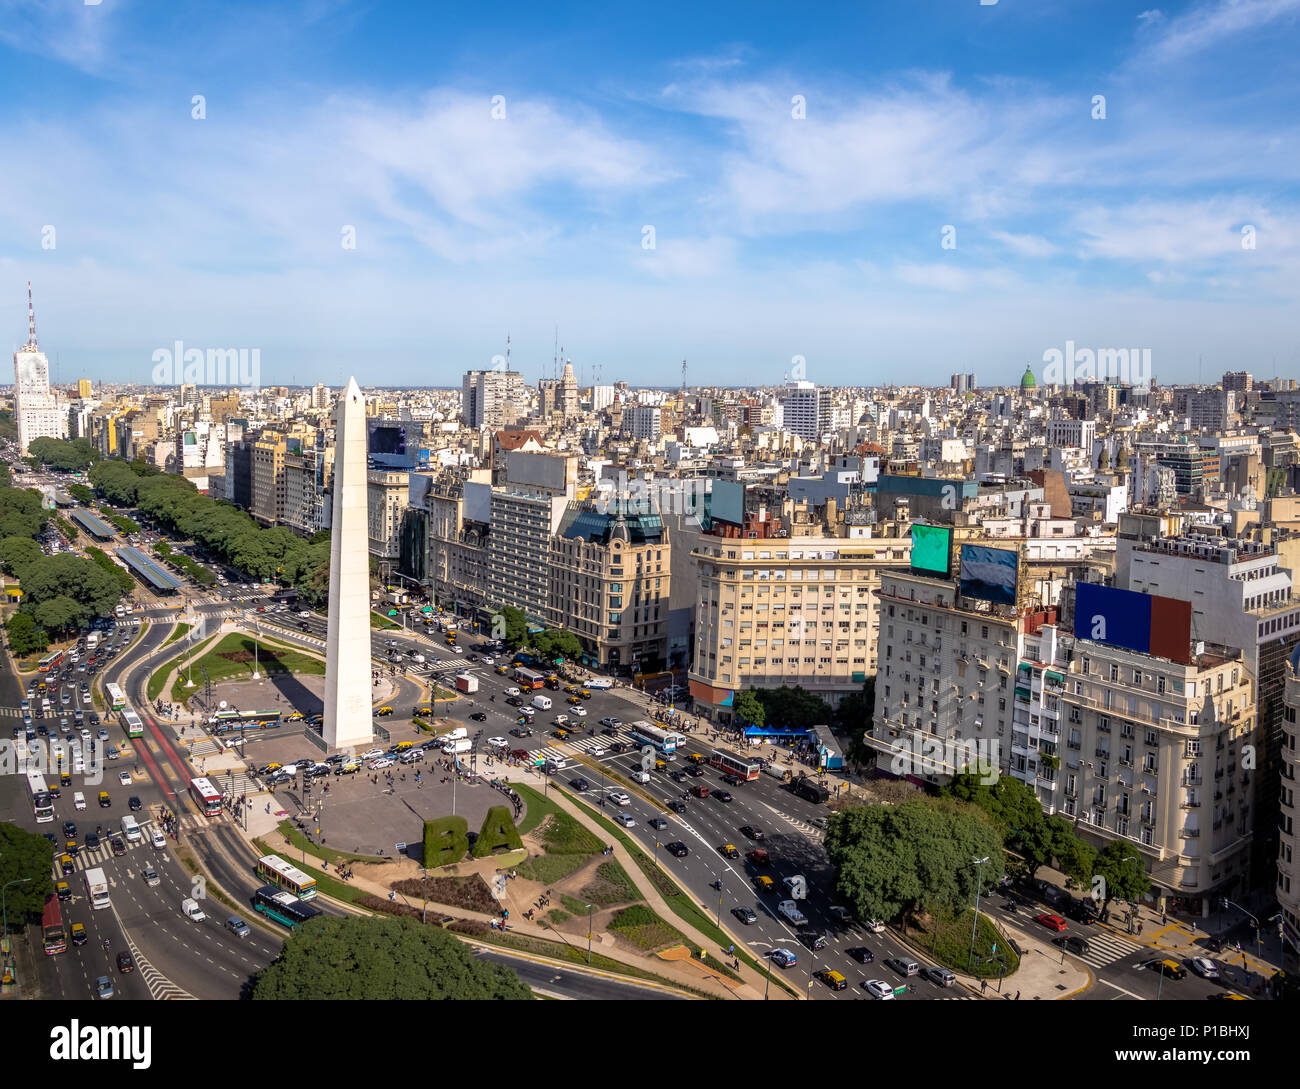 Vue aérienne de la ville de Buenos Aires avec l'Obélisque et de l'avenue 9 de julio - Buenos Aires, Argentine Banque D'Images